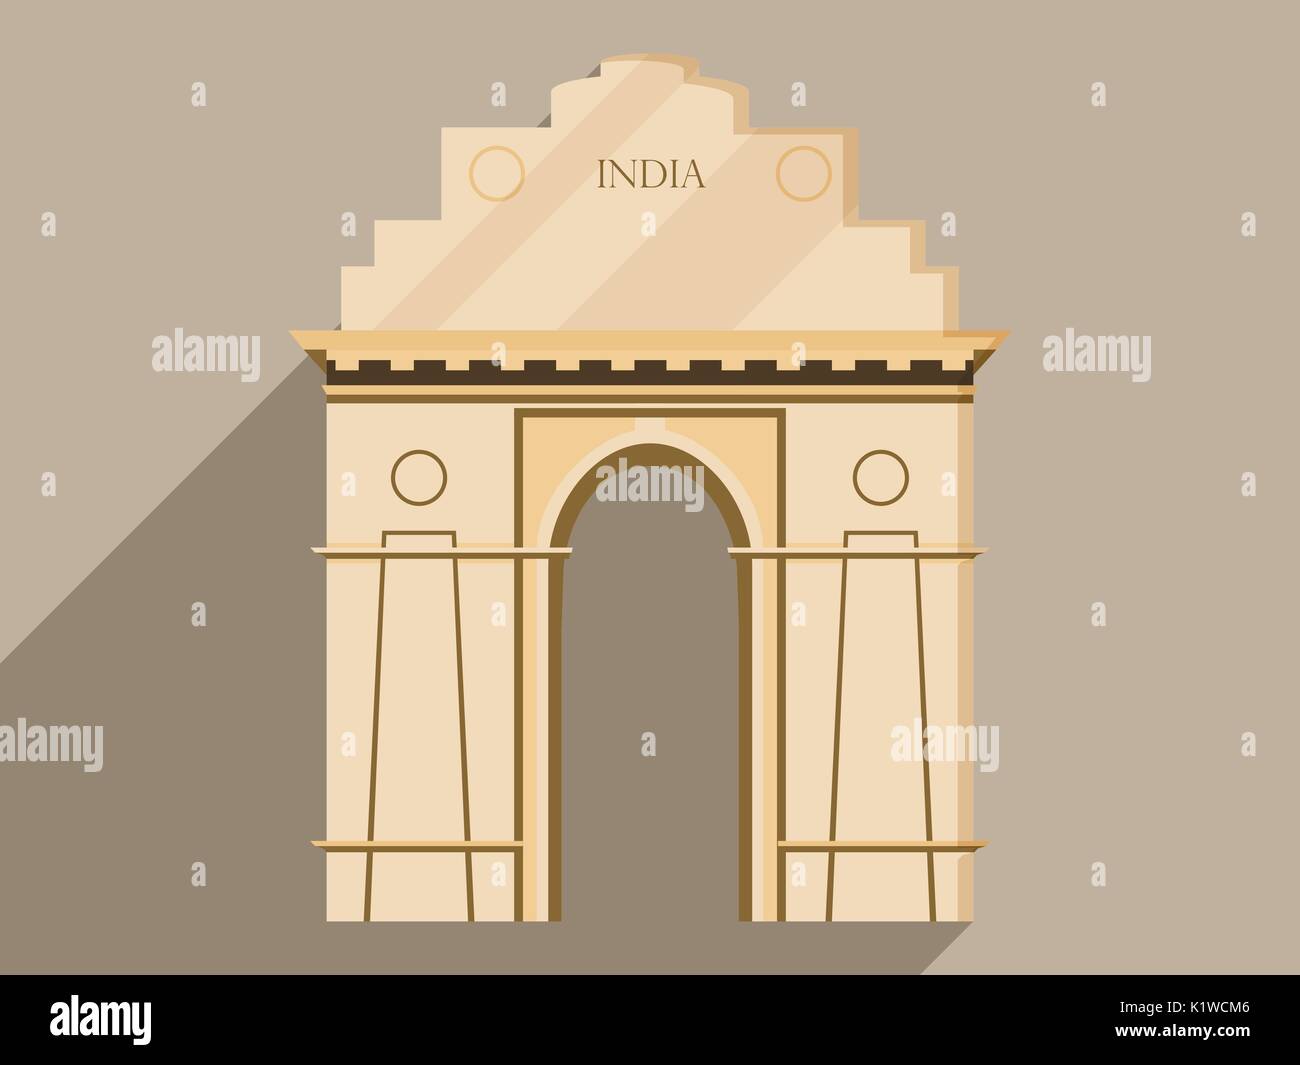 La porte de l'Inde l'isolement sur un fond blanc. Symbole de l'Inde, New Delhi. Illustration d'une télévision et d'une grande ombre. Vecteur. Illustration de Vecteur